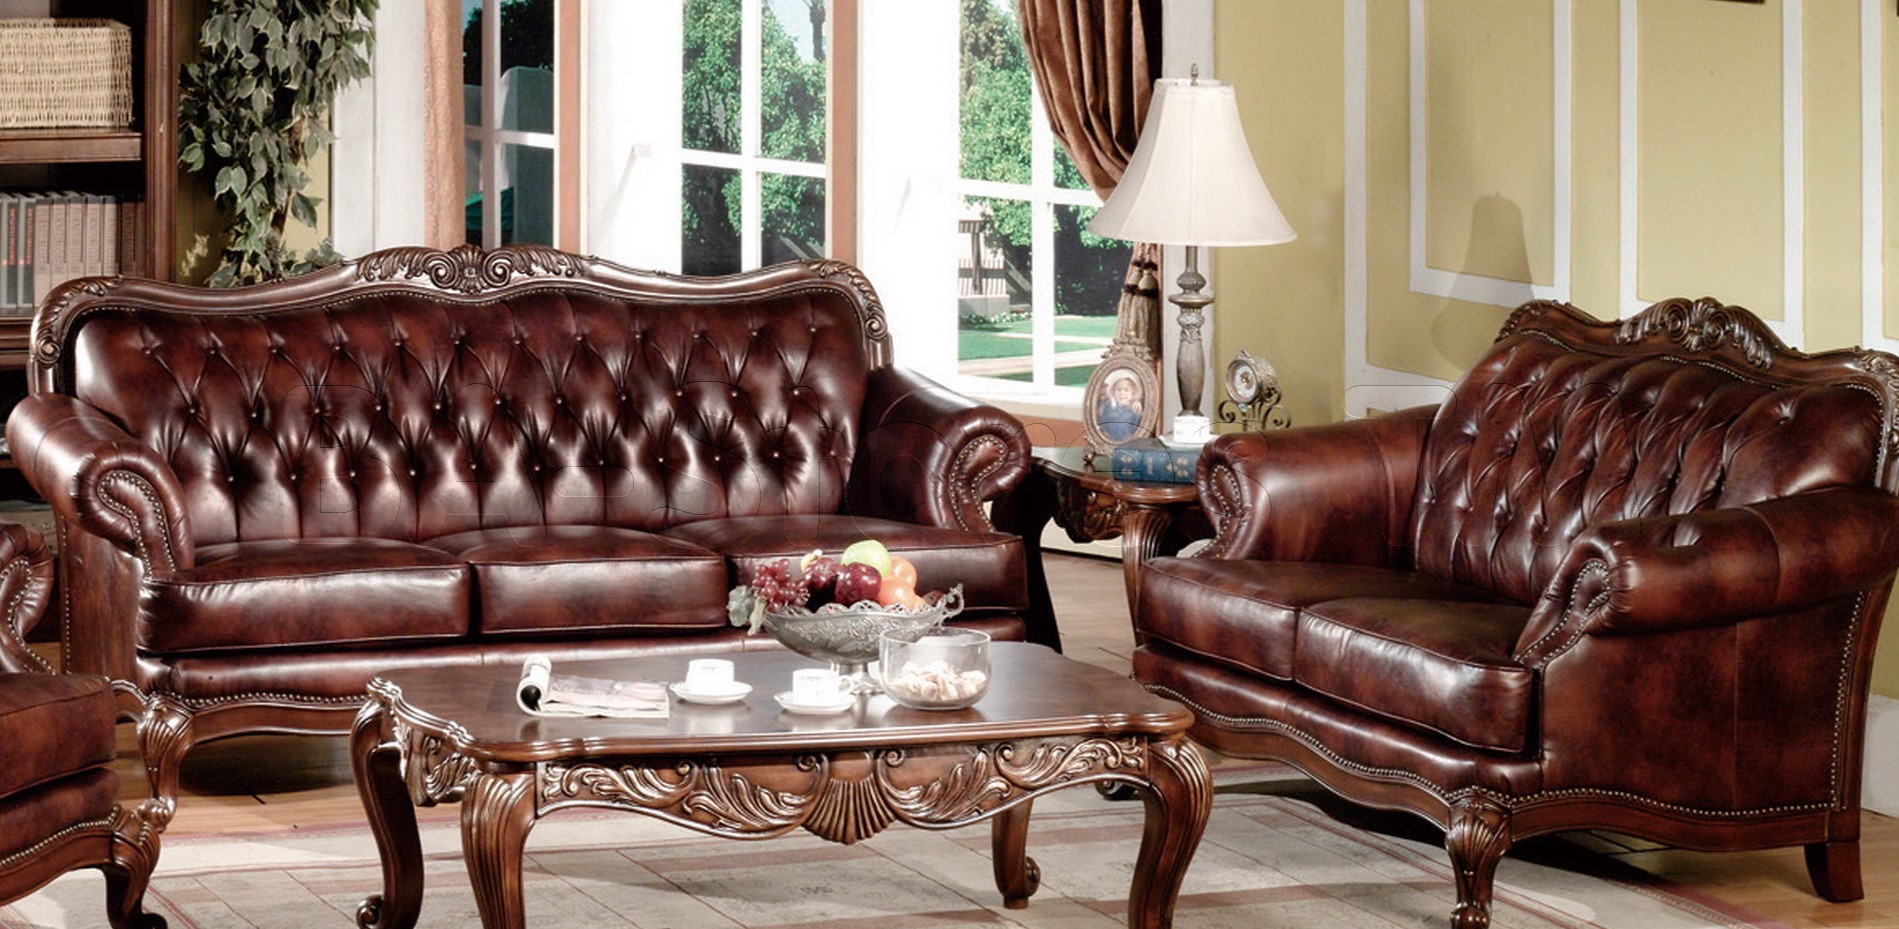 Кожаные диваны с деревяным резным основанием подойдут для классического интерьера